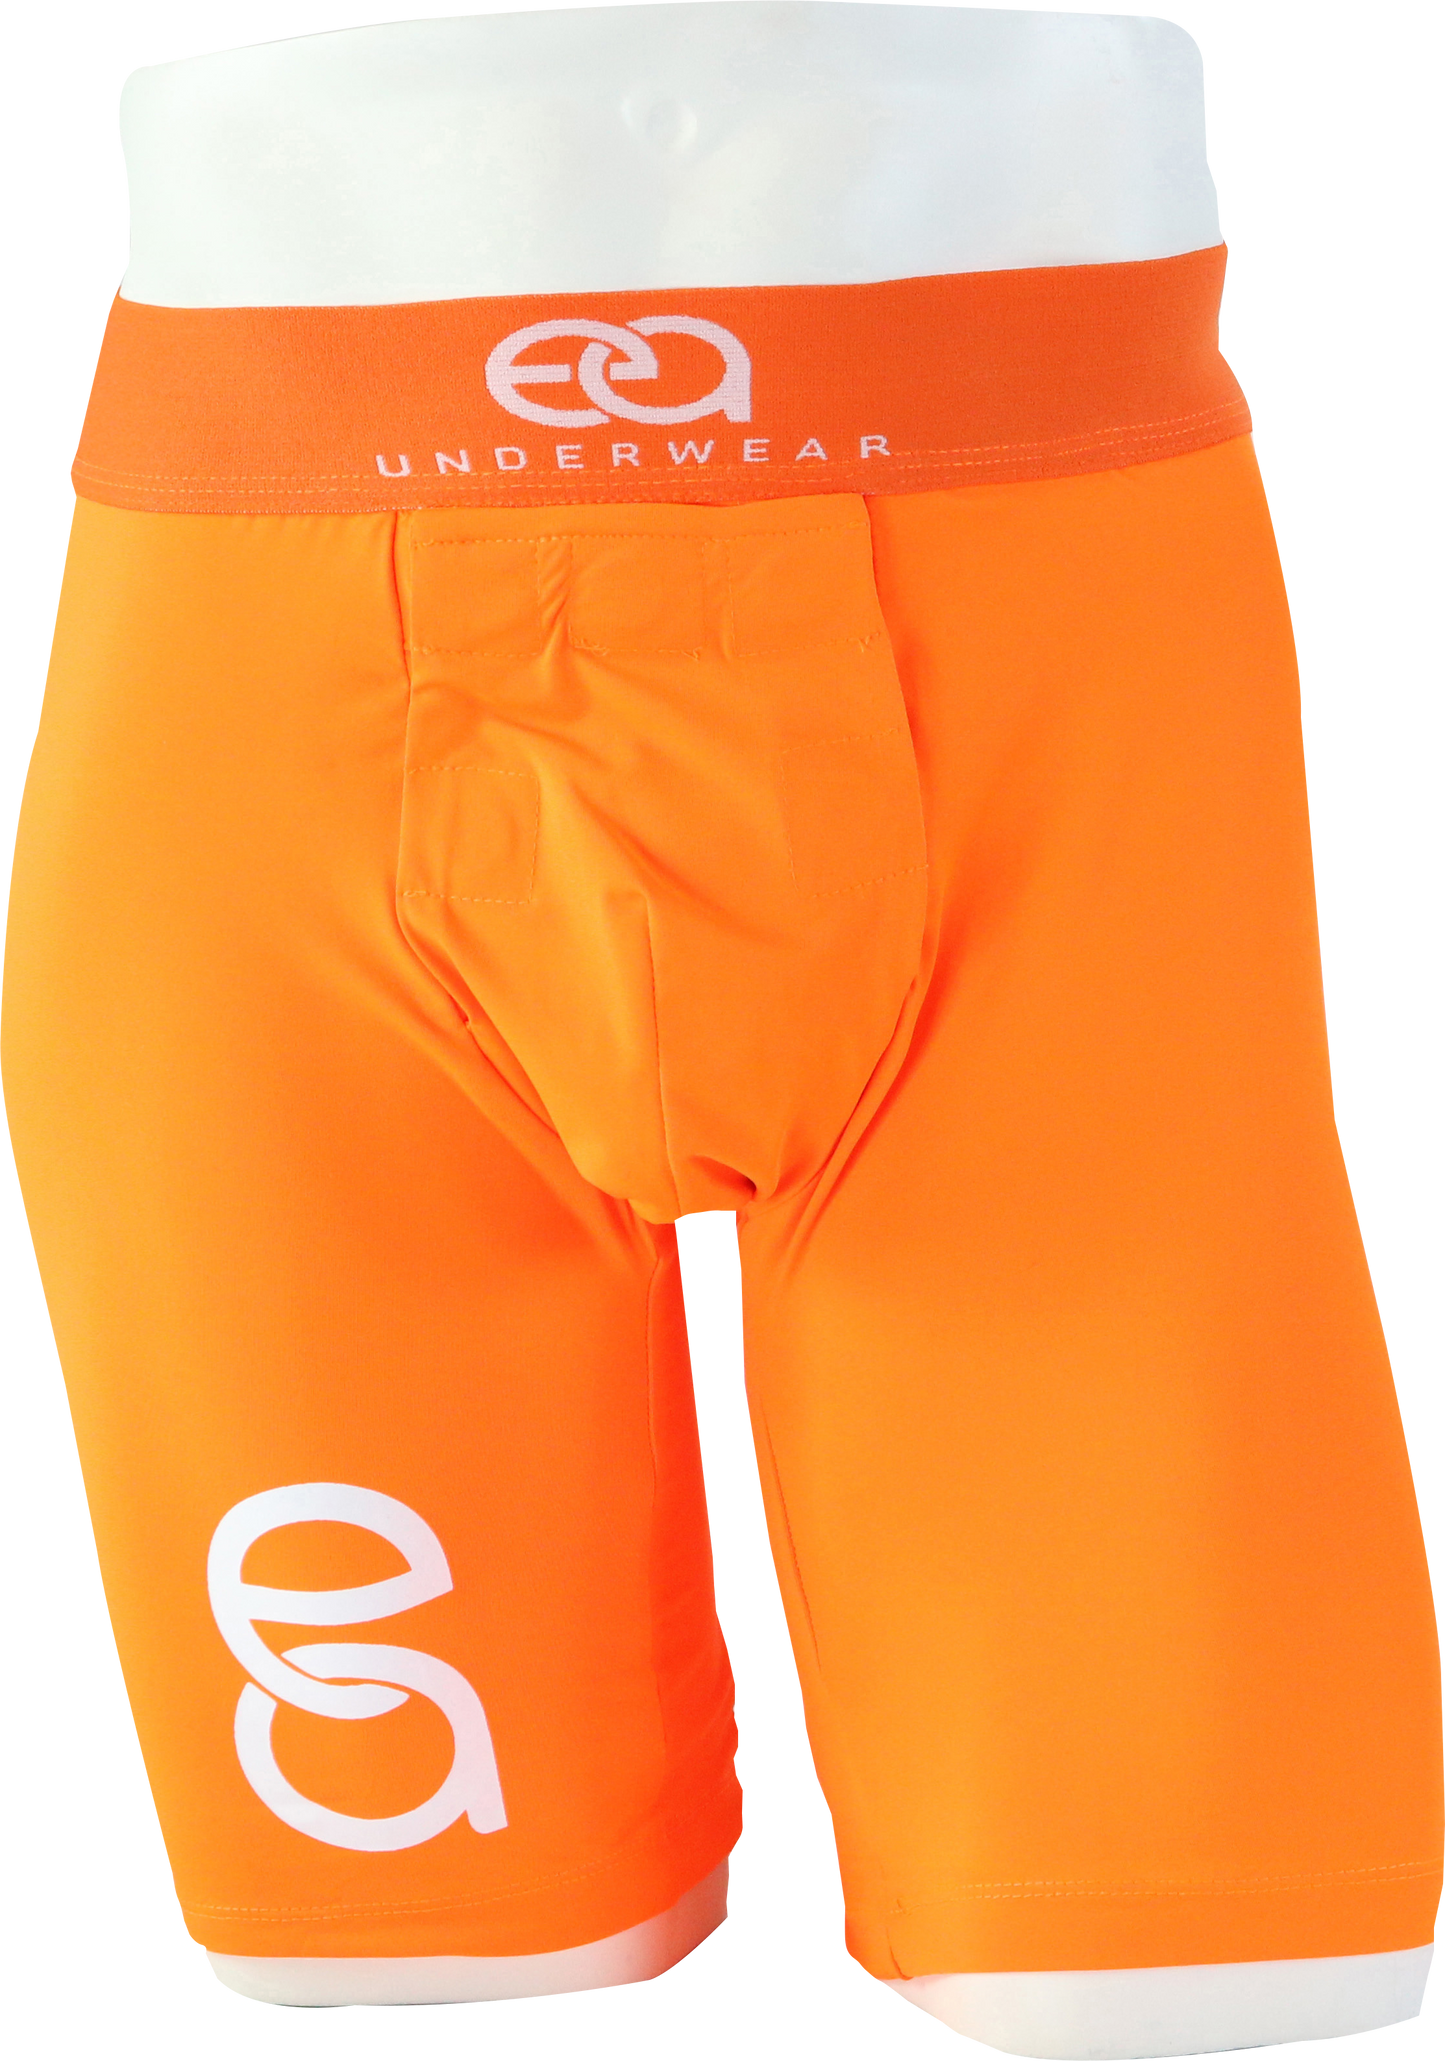 Easy Access Underwear Orange